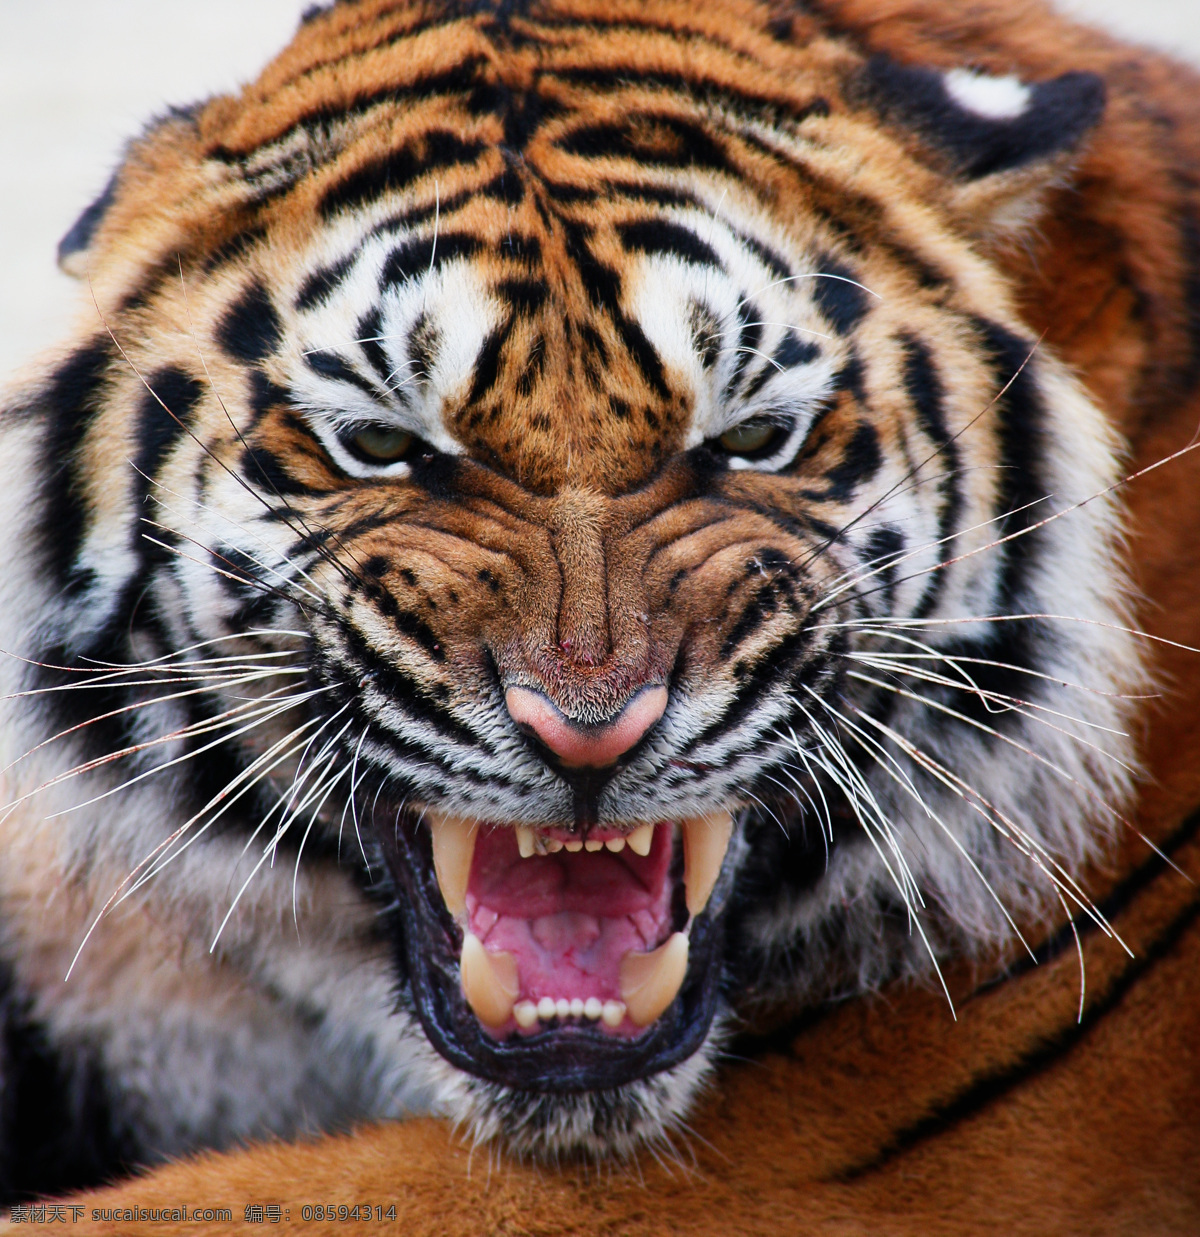 微笑的老虎 微笑 滑稽 幽默 好笑 动物 野生动物 生物世界